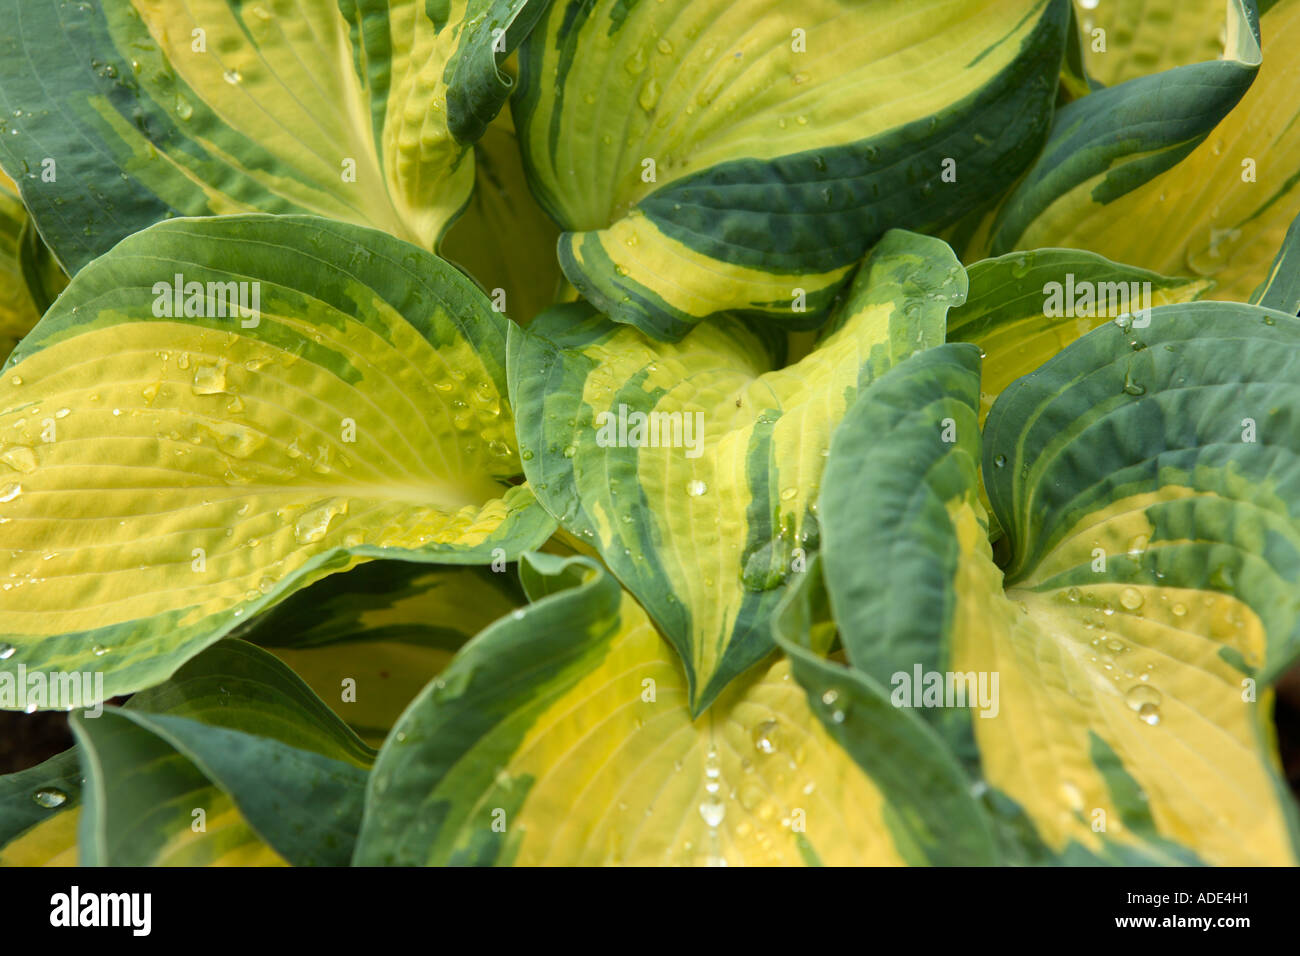 Impianto di grandi dimensioni con il giallo e il verde delle foglie Foto Stock